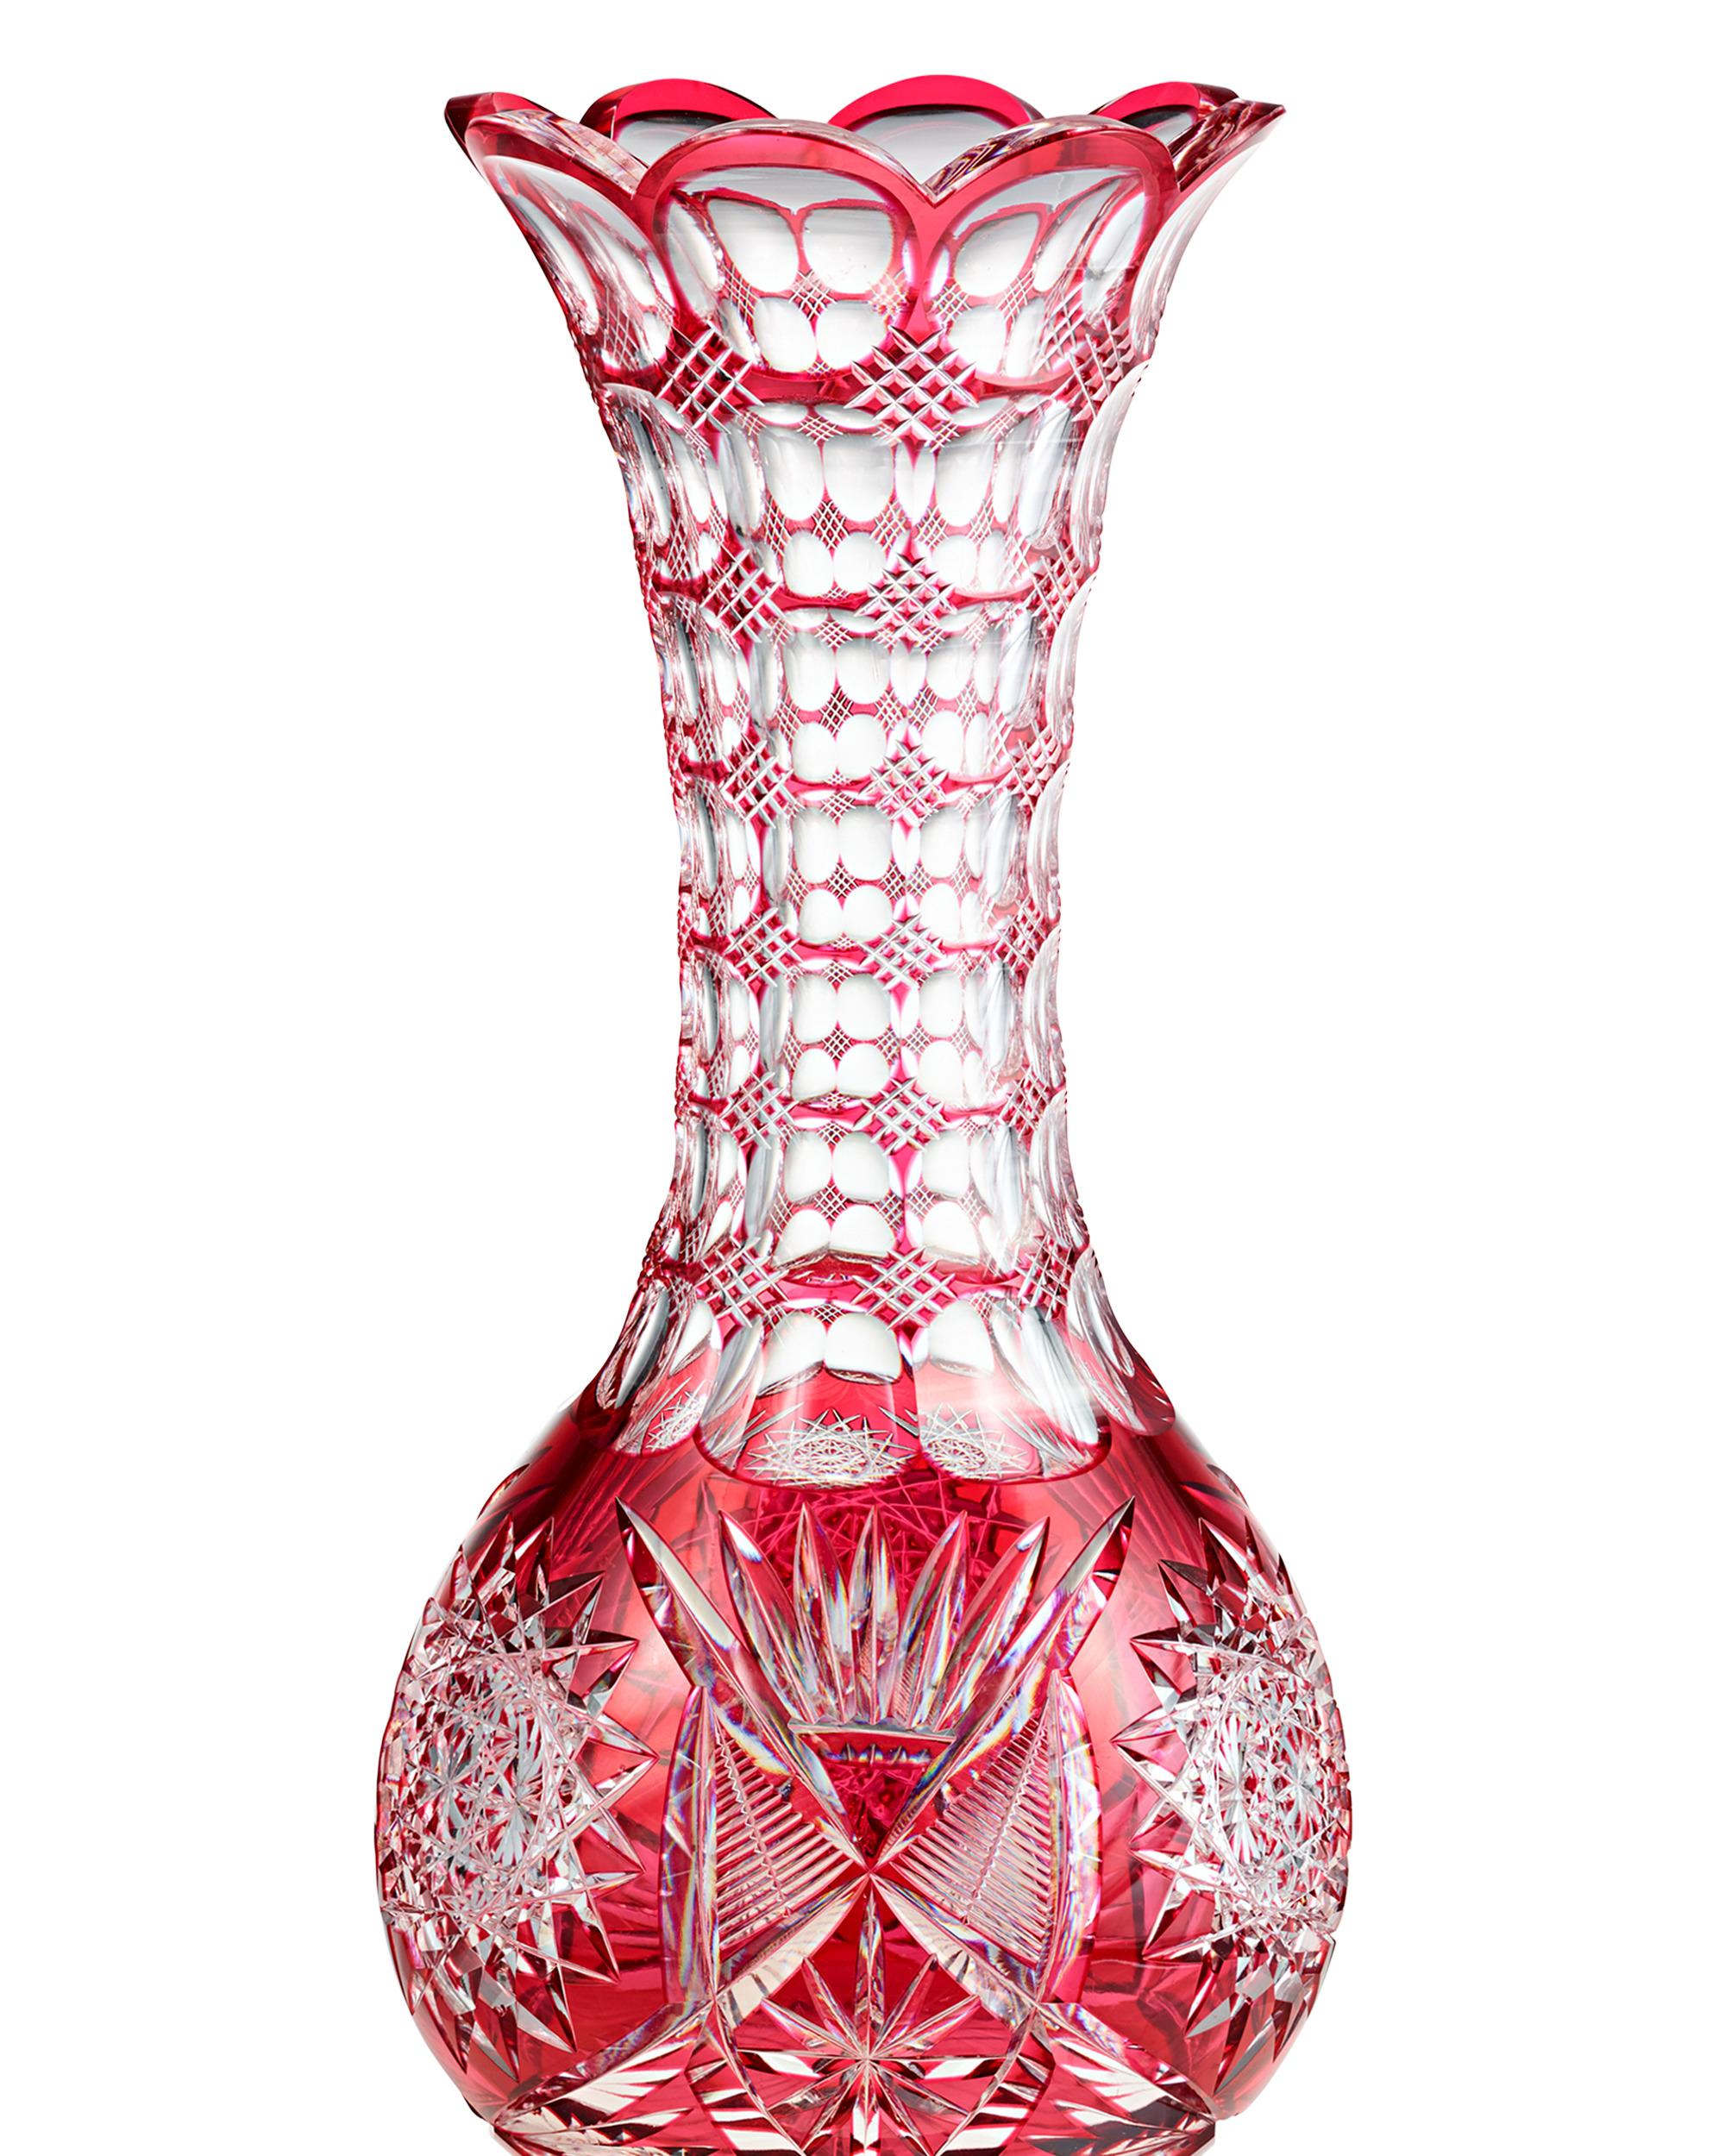 Ce vase en verre taillé remarquablement exquis a été fabriqué par l'une des plus anciennes verreries des États-Unis, Pairpoint. La décoration élaborée de la coupe à la transparence est brillamment coupée d'un rouge vif frappant à la transparence